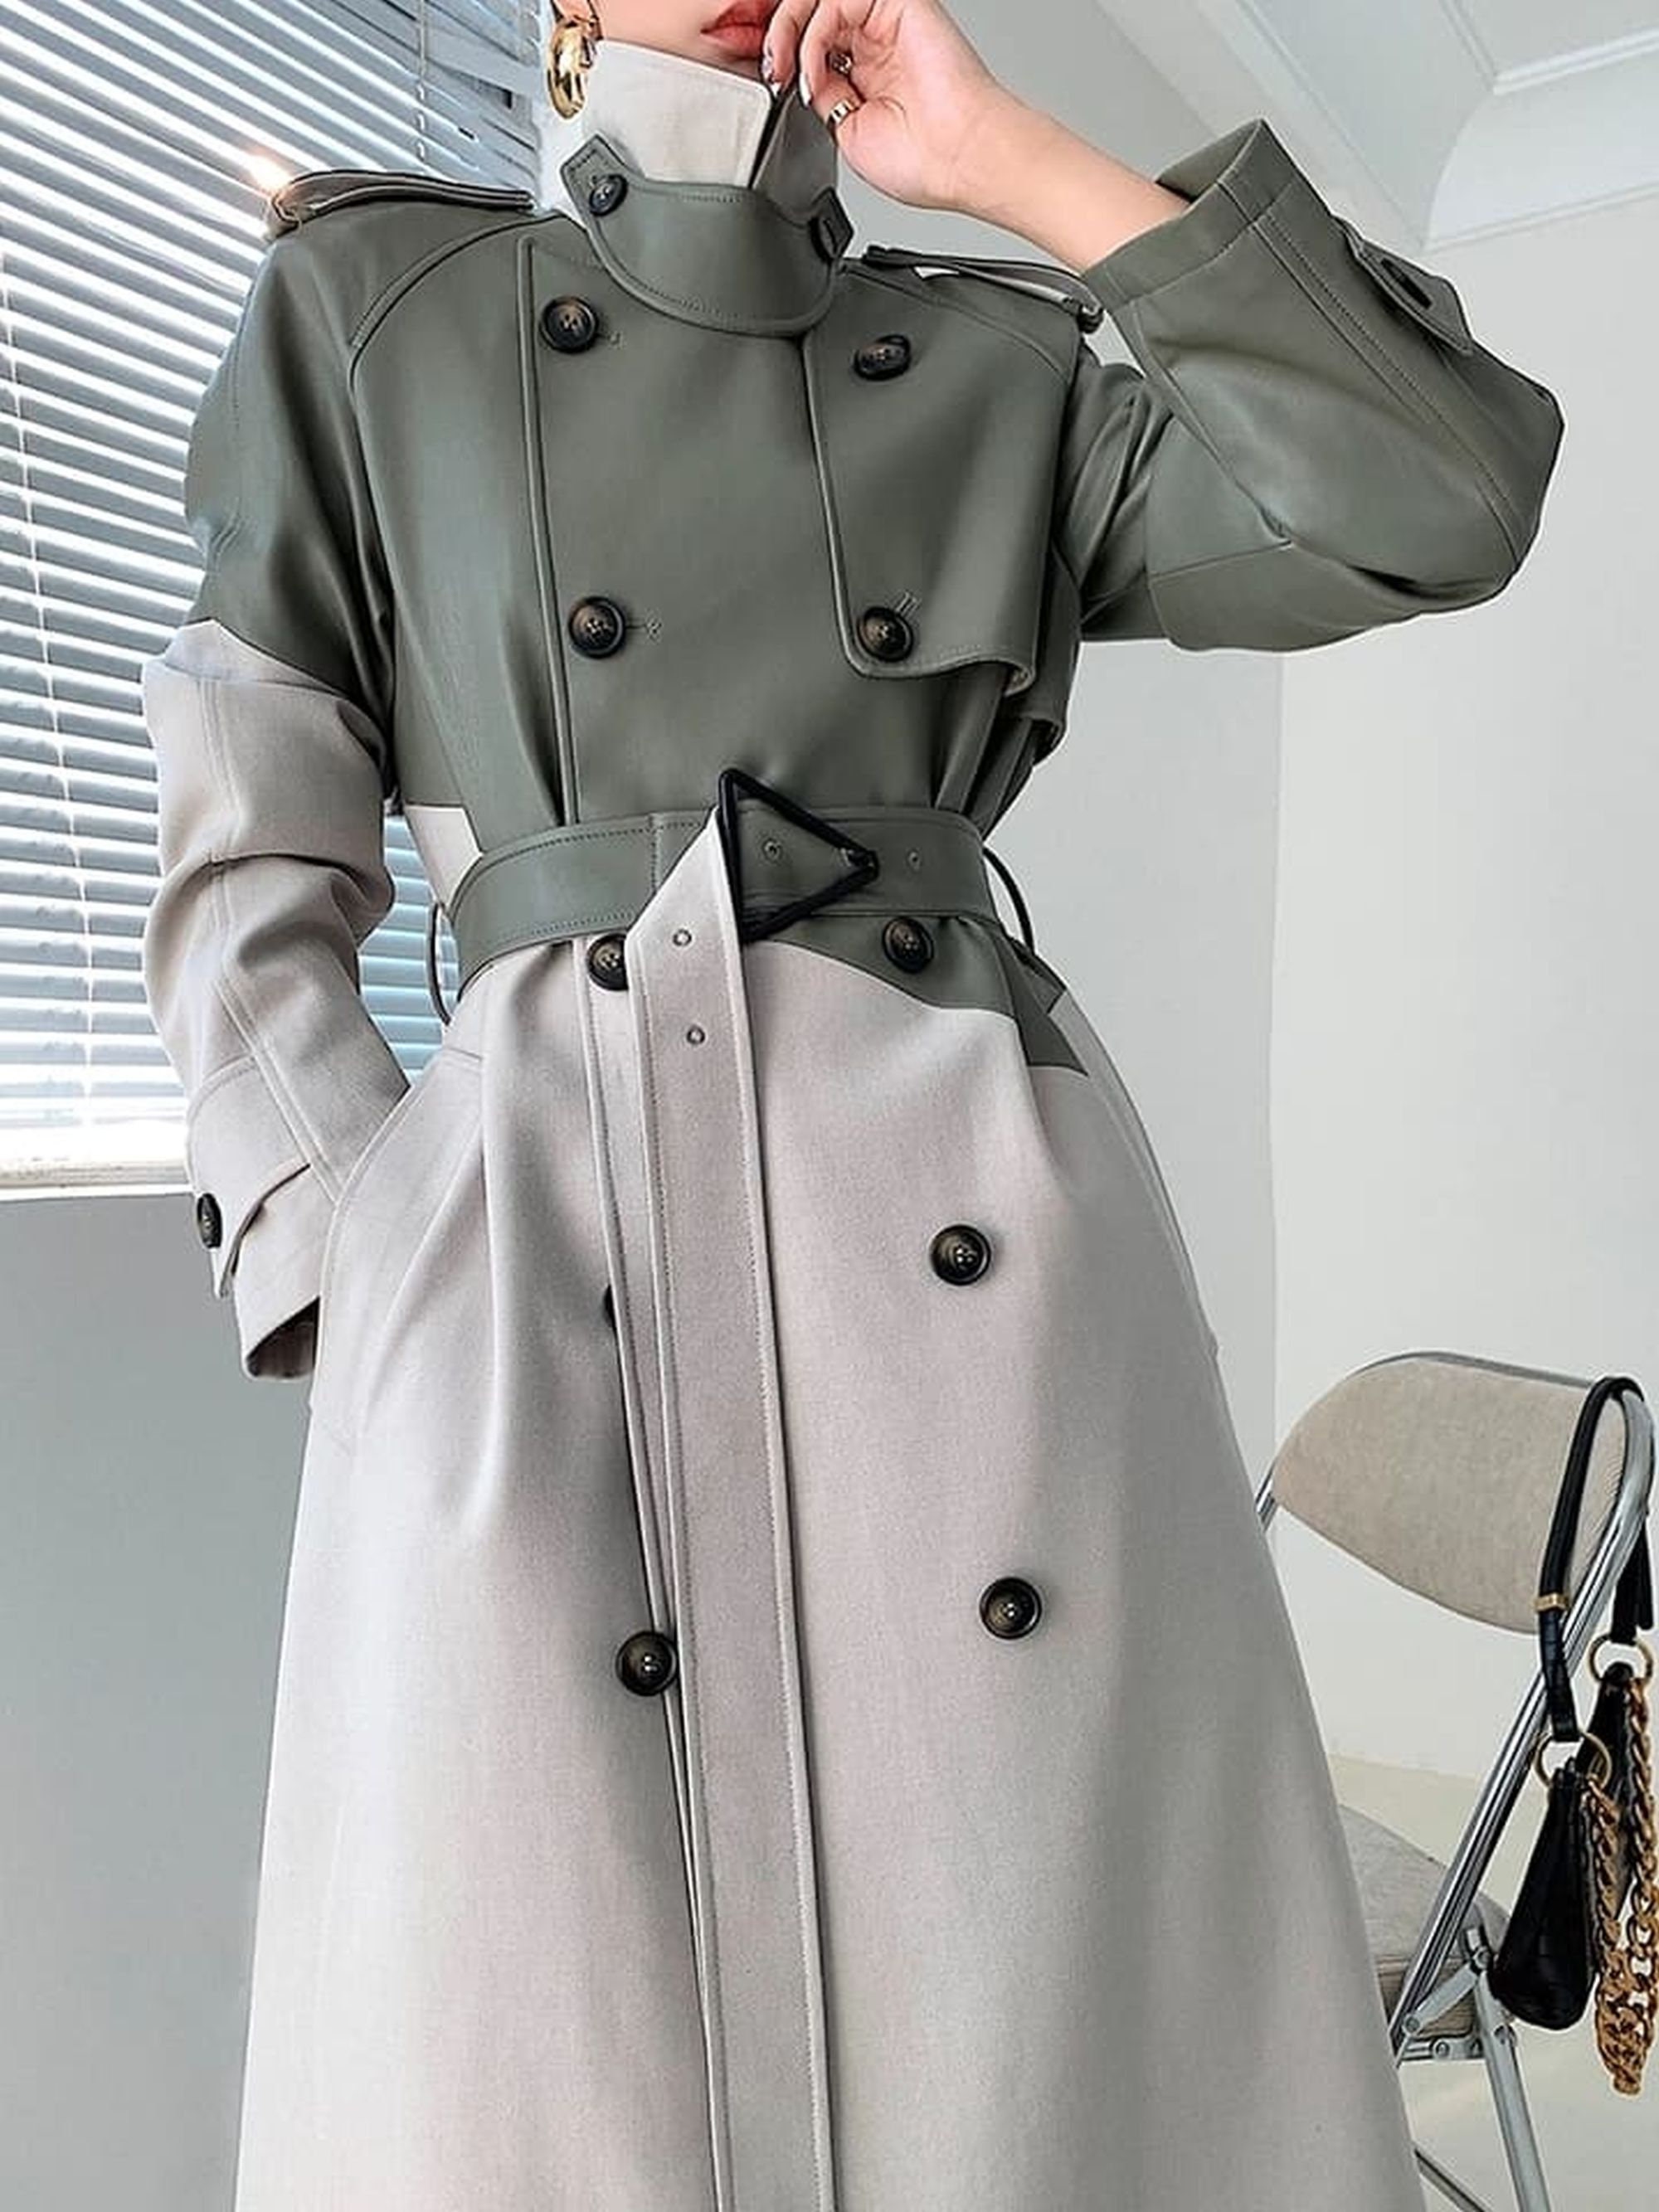 Retro coat Fashion coat Design coat Long overcoat Women | Etsy